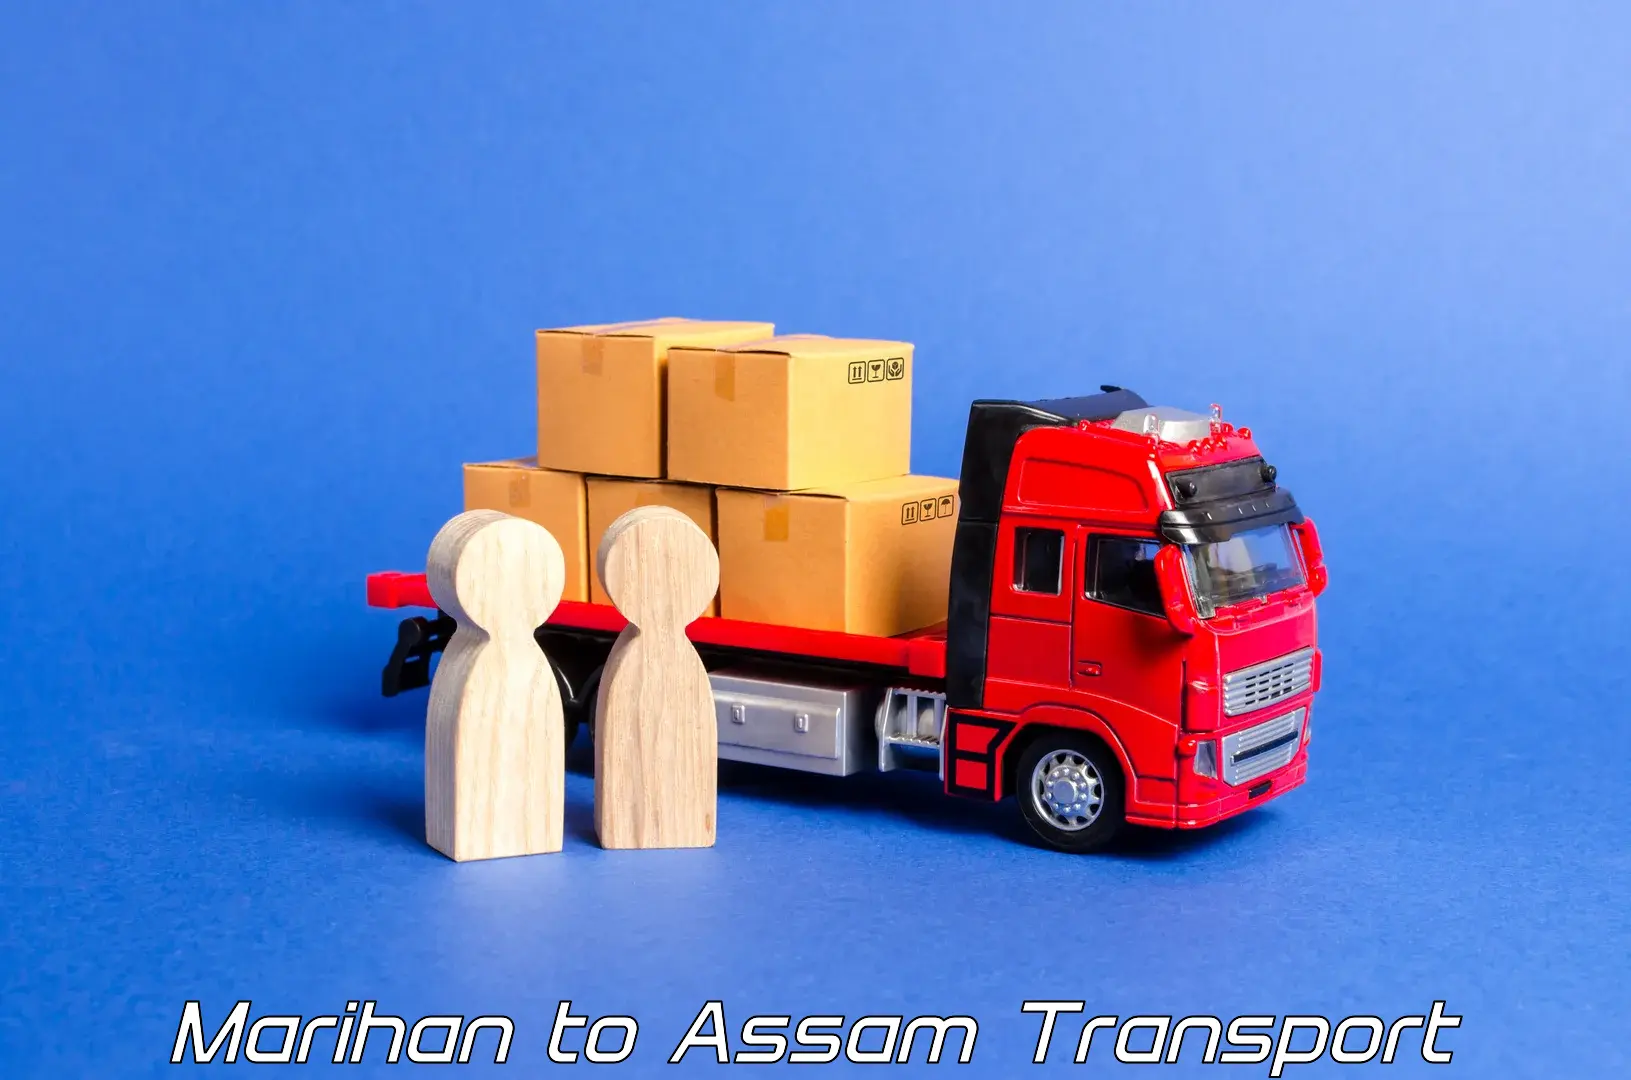 Interstate goods transport Marihan to Nagaon